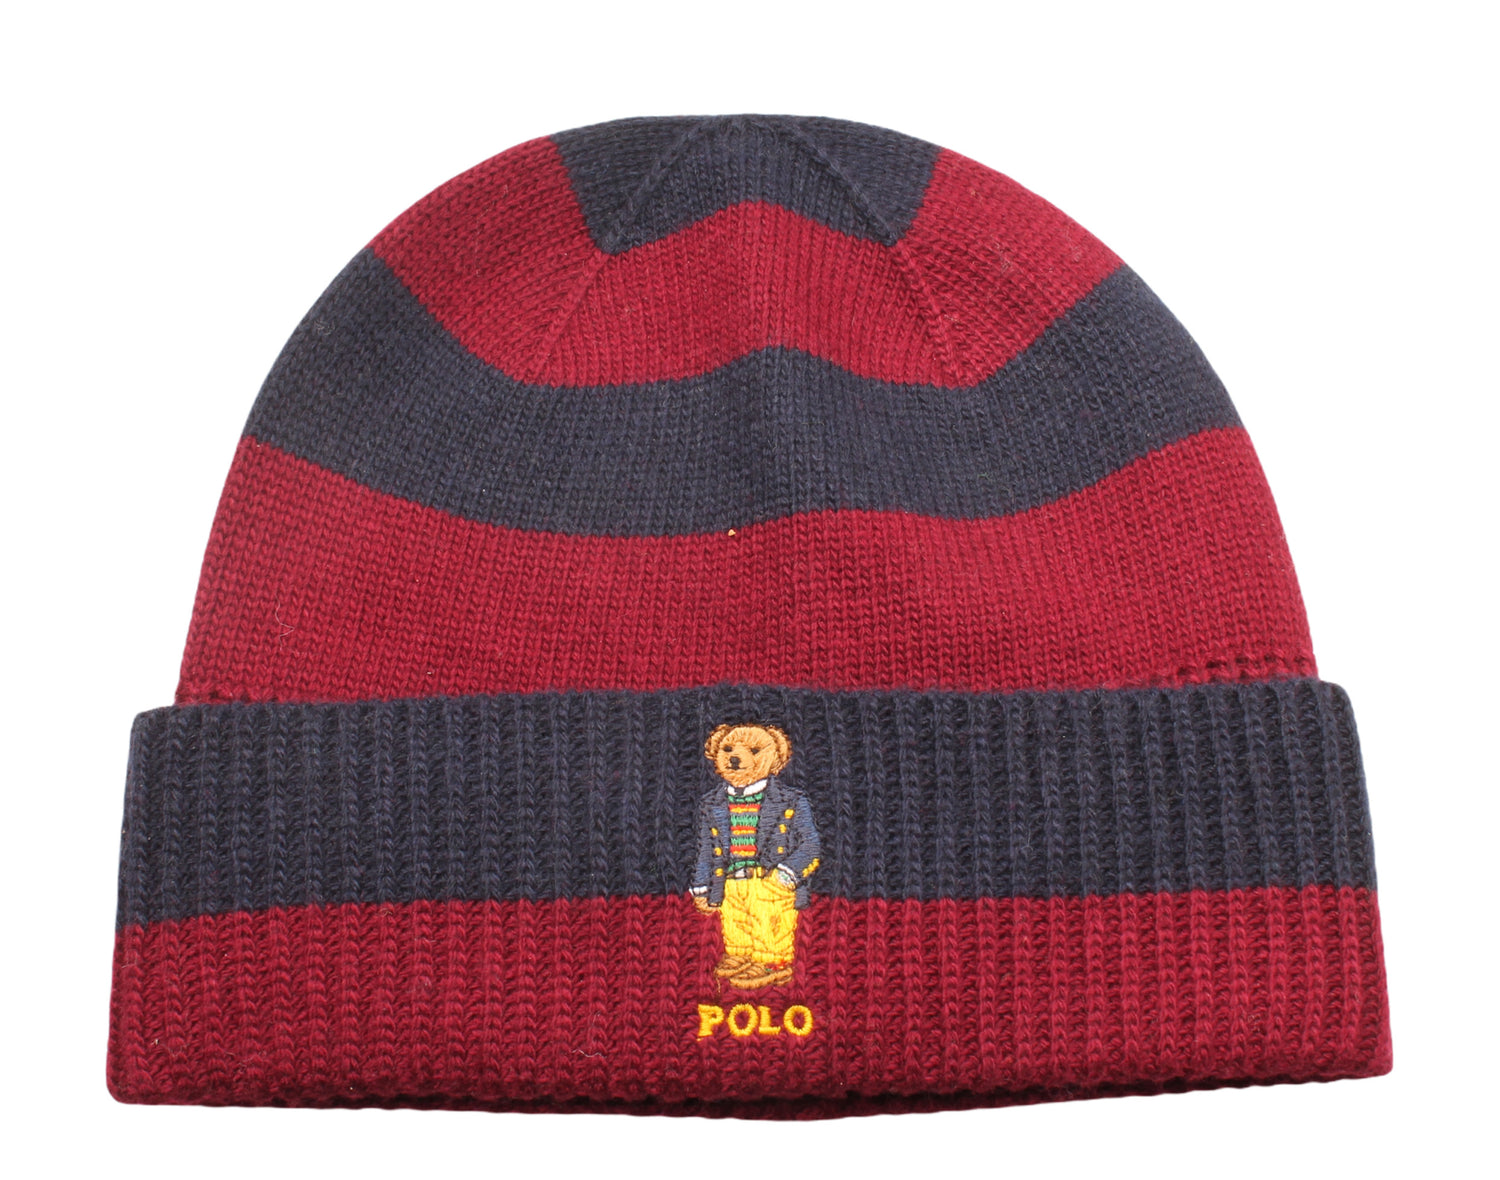 Polo Ralph Lauren Polo Bear Rugby Strpe Knit Cuffed Beanie Hat